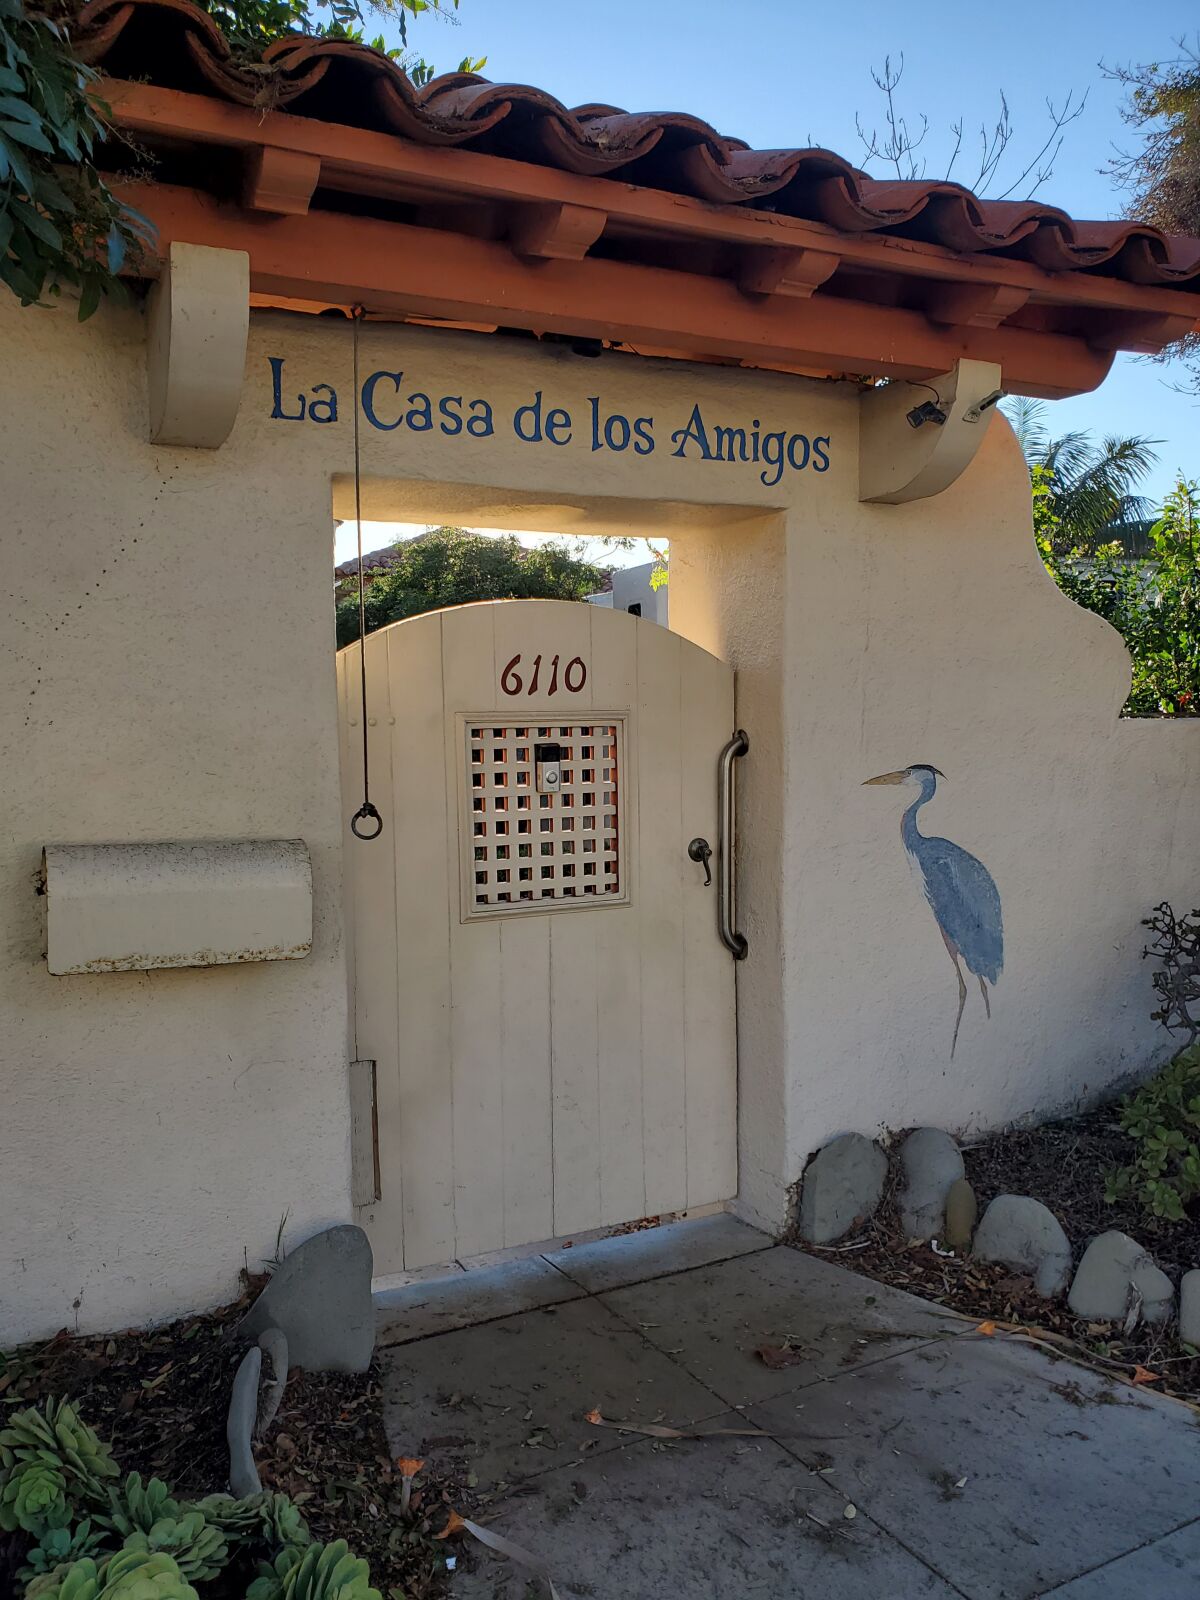 A decorative entryway at La Casa de los Amigos at 6110 Camino de la Costa.